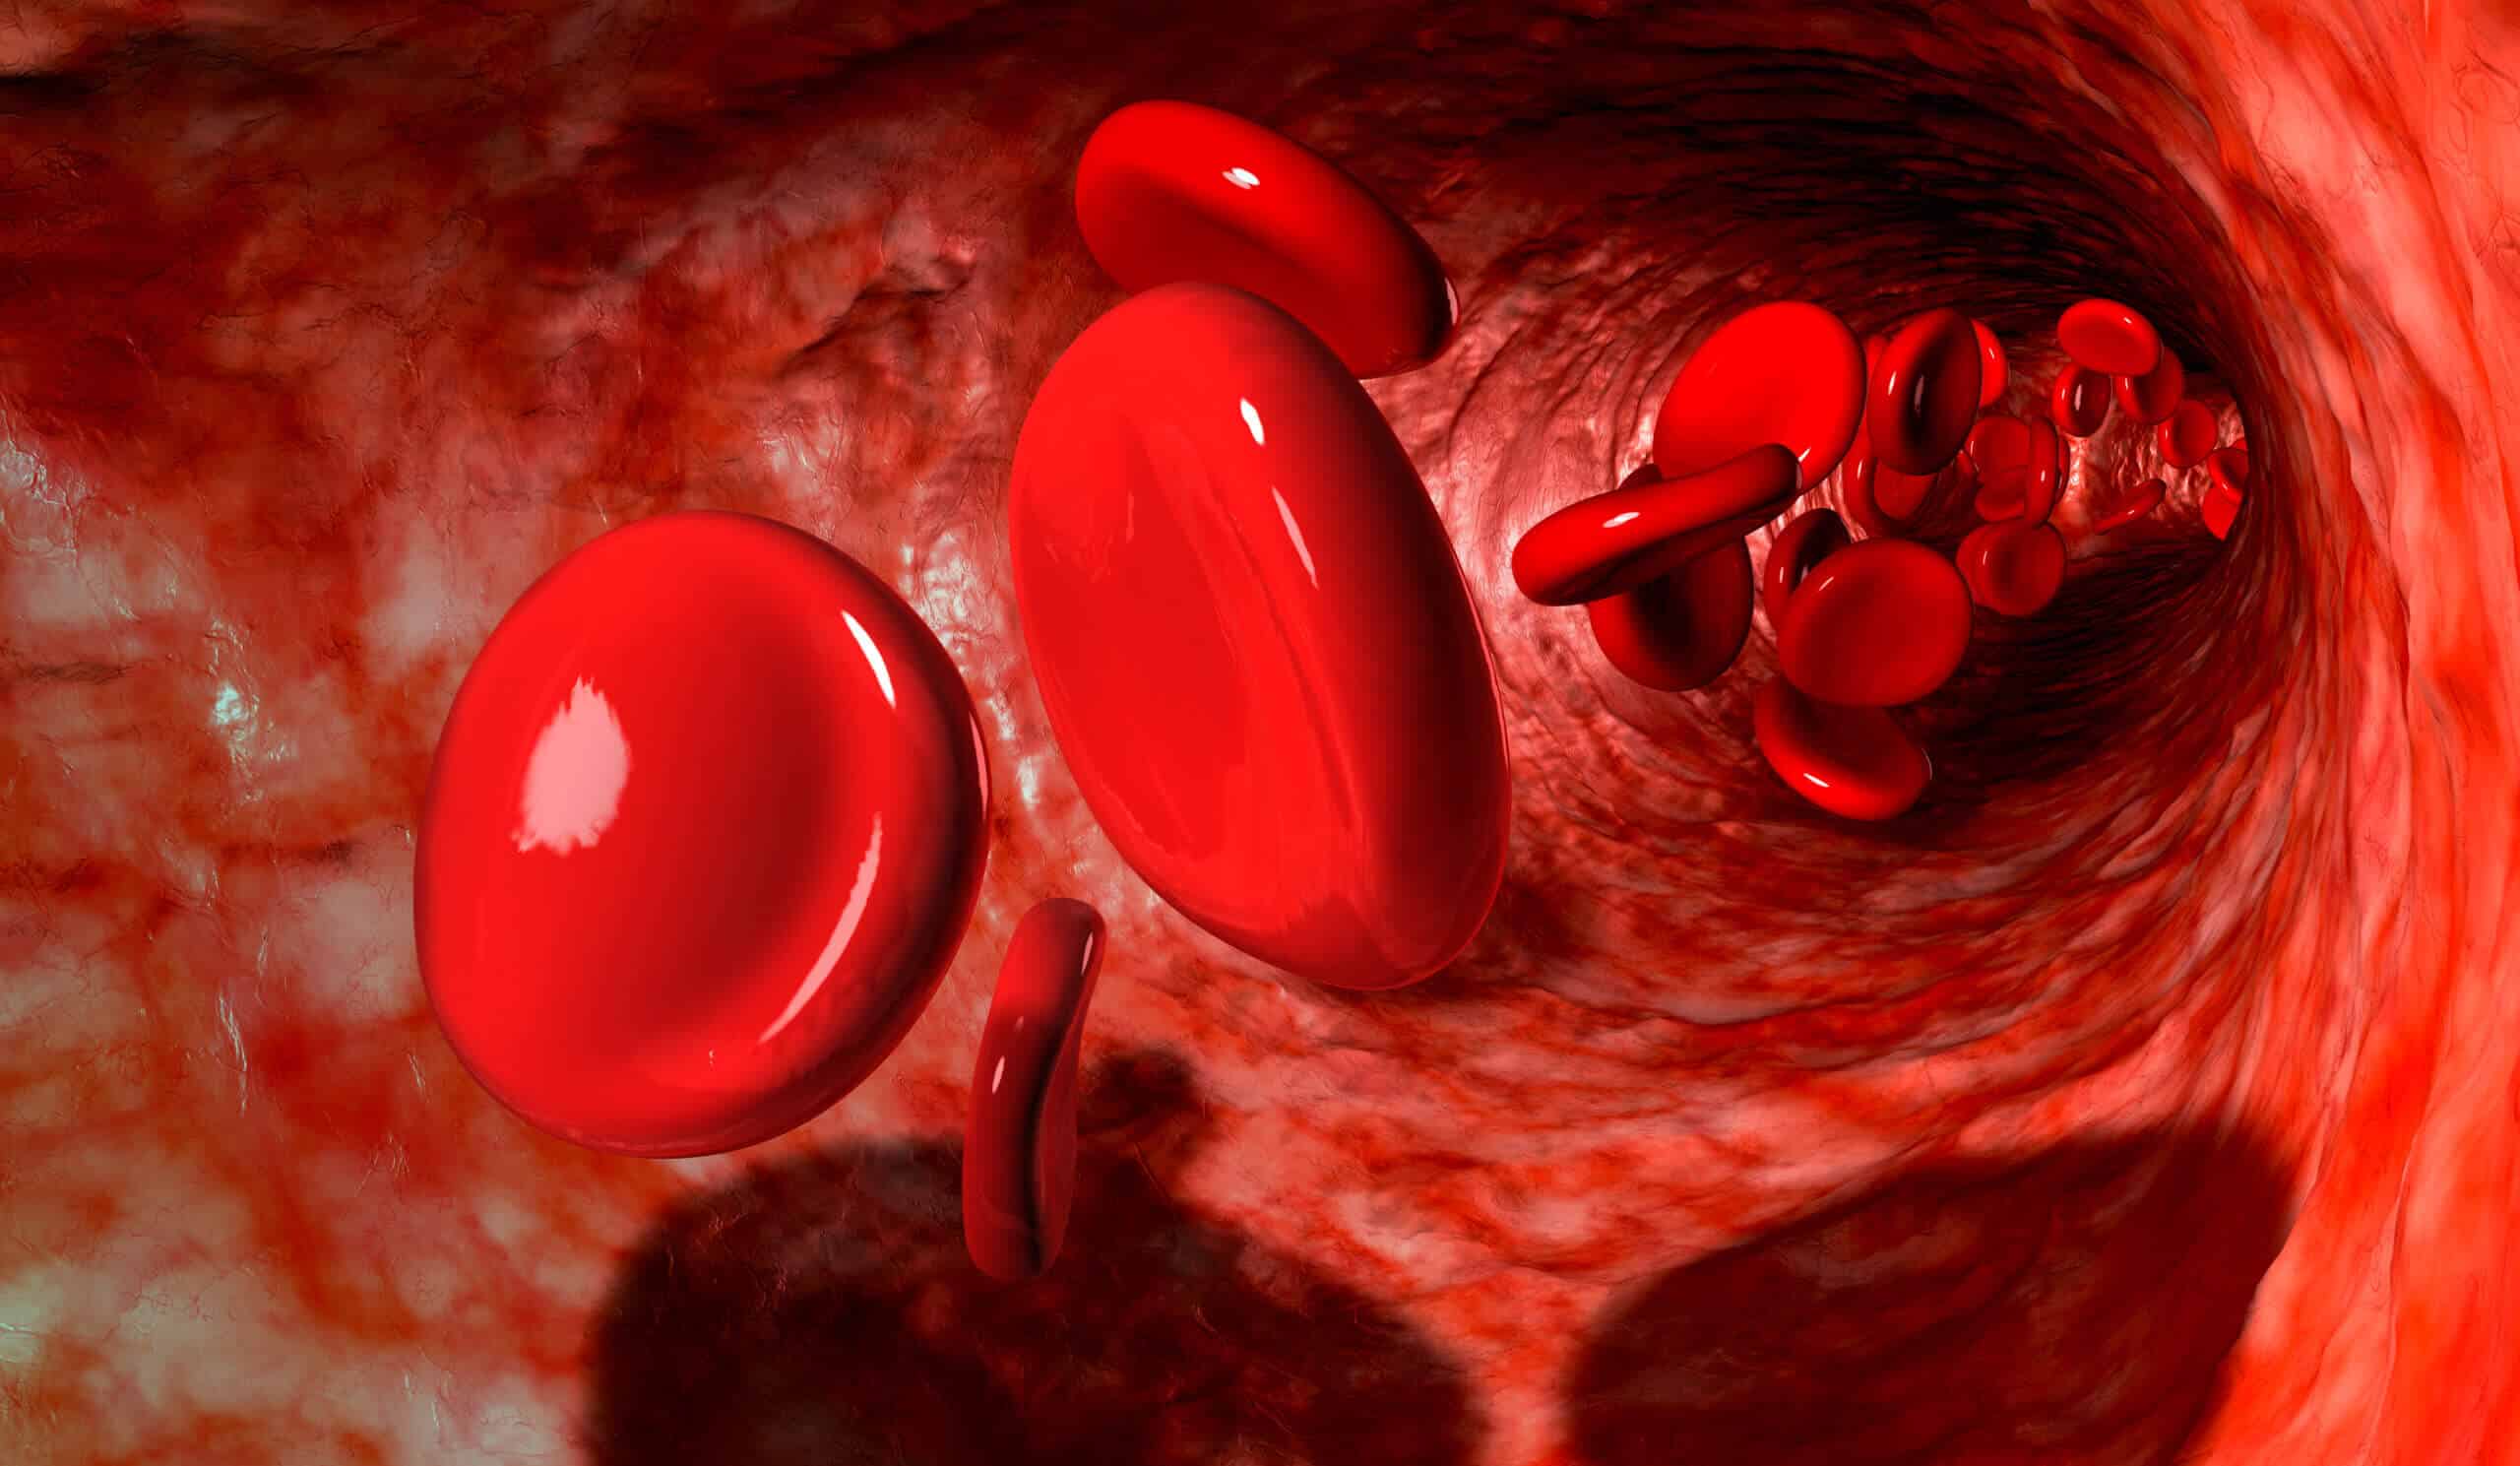 خلايا الدم الحمراء في الوريد (صورة توضيحية) الصورة: Depositphotos.com